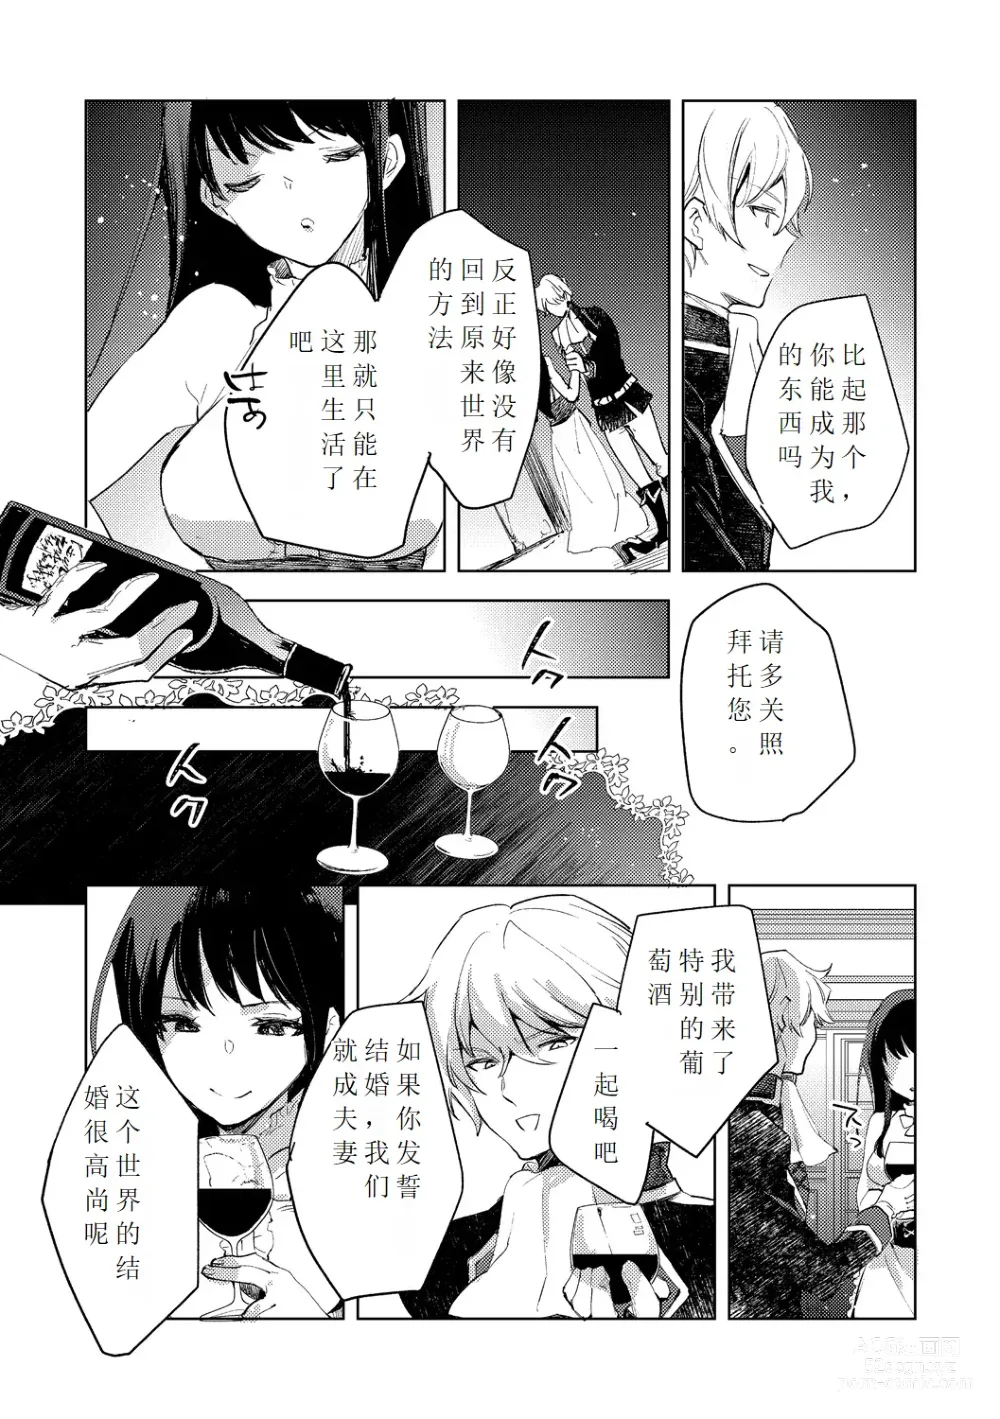 Page 36 of manga Tensei shitara Daruma Joshi ni Sareta Usotsuki Bitch.